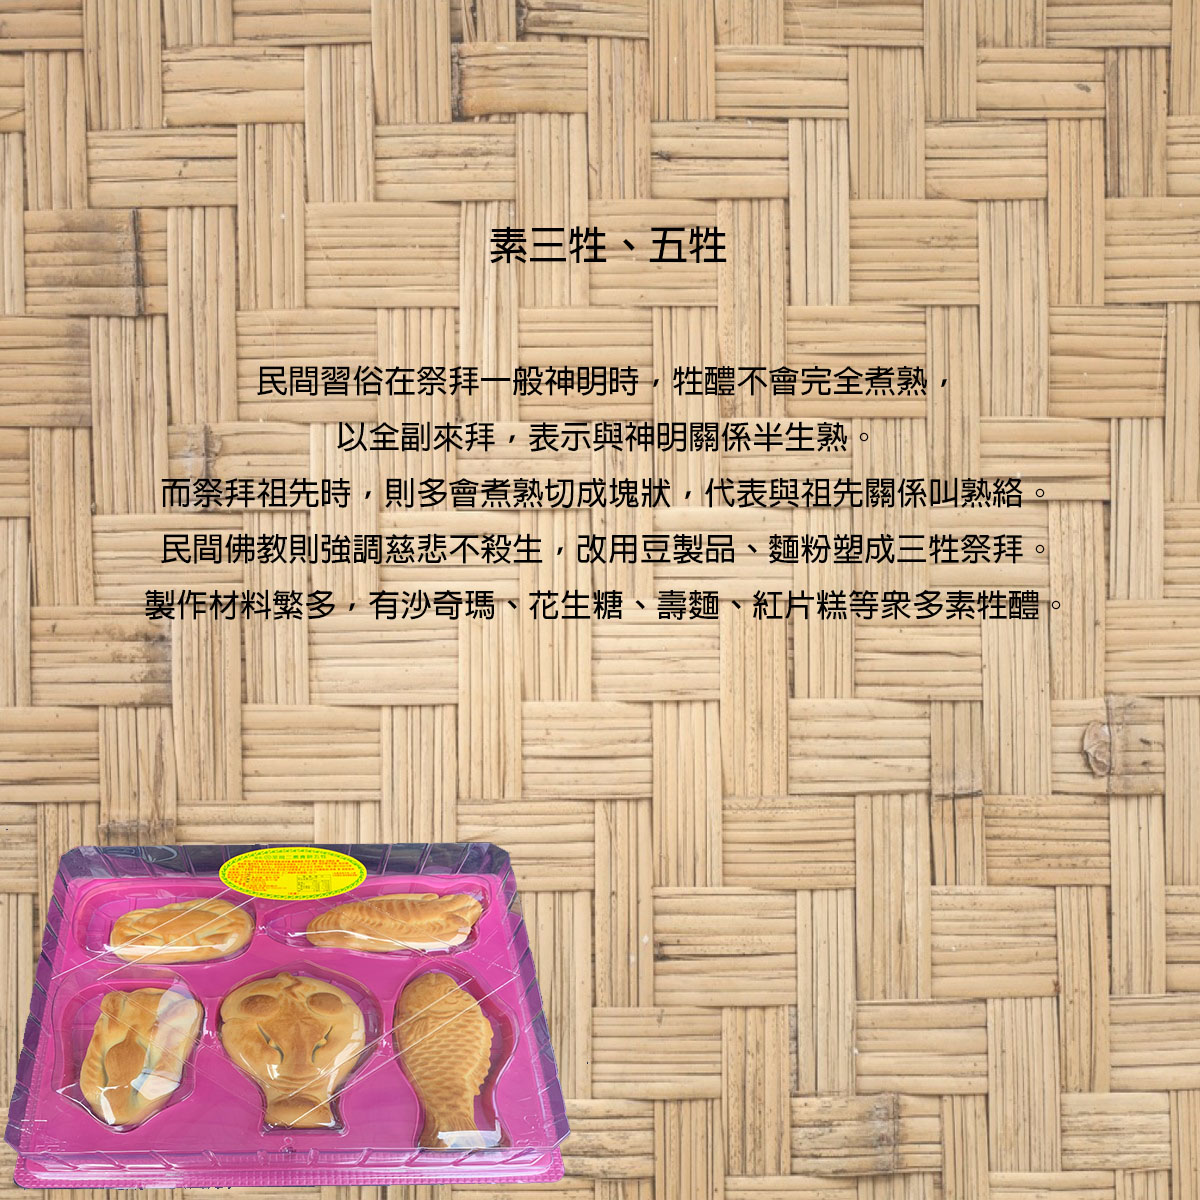 法事祭品-尾日香齋素六飯菜全組含未煮八珍湯藥壺